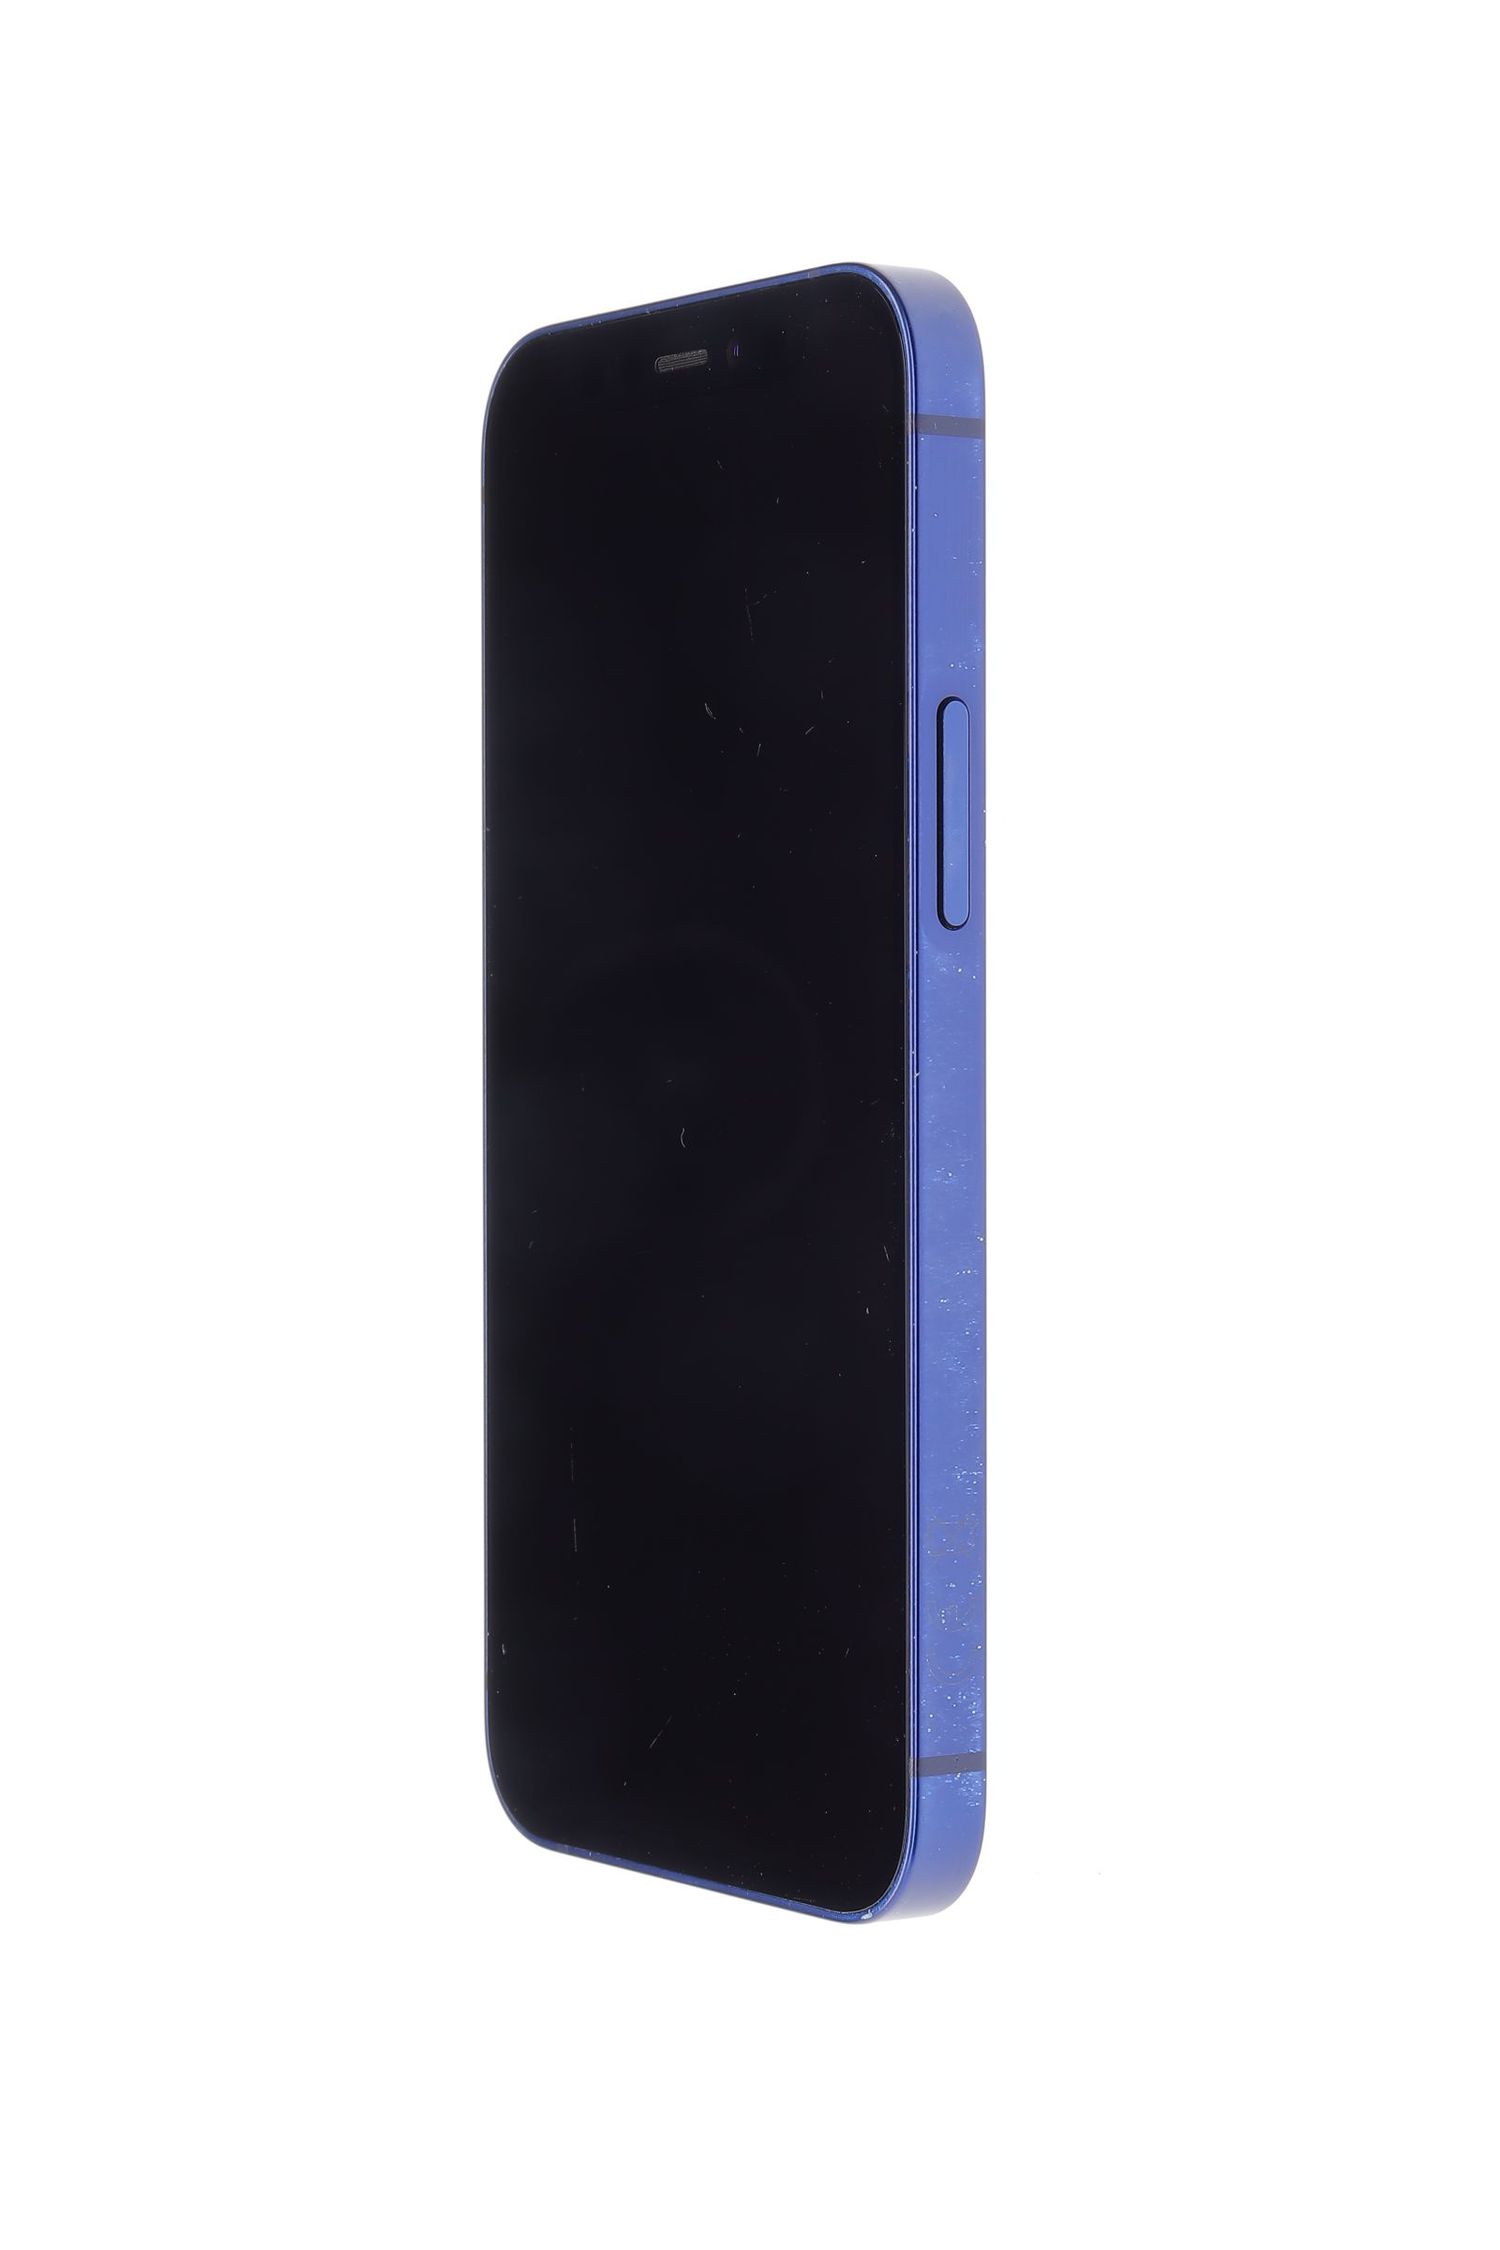 Κινητό τηλέφωνο Apple iPhone 12 mini, Blue, 128 GB, Foarte Bun